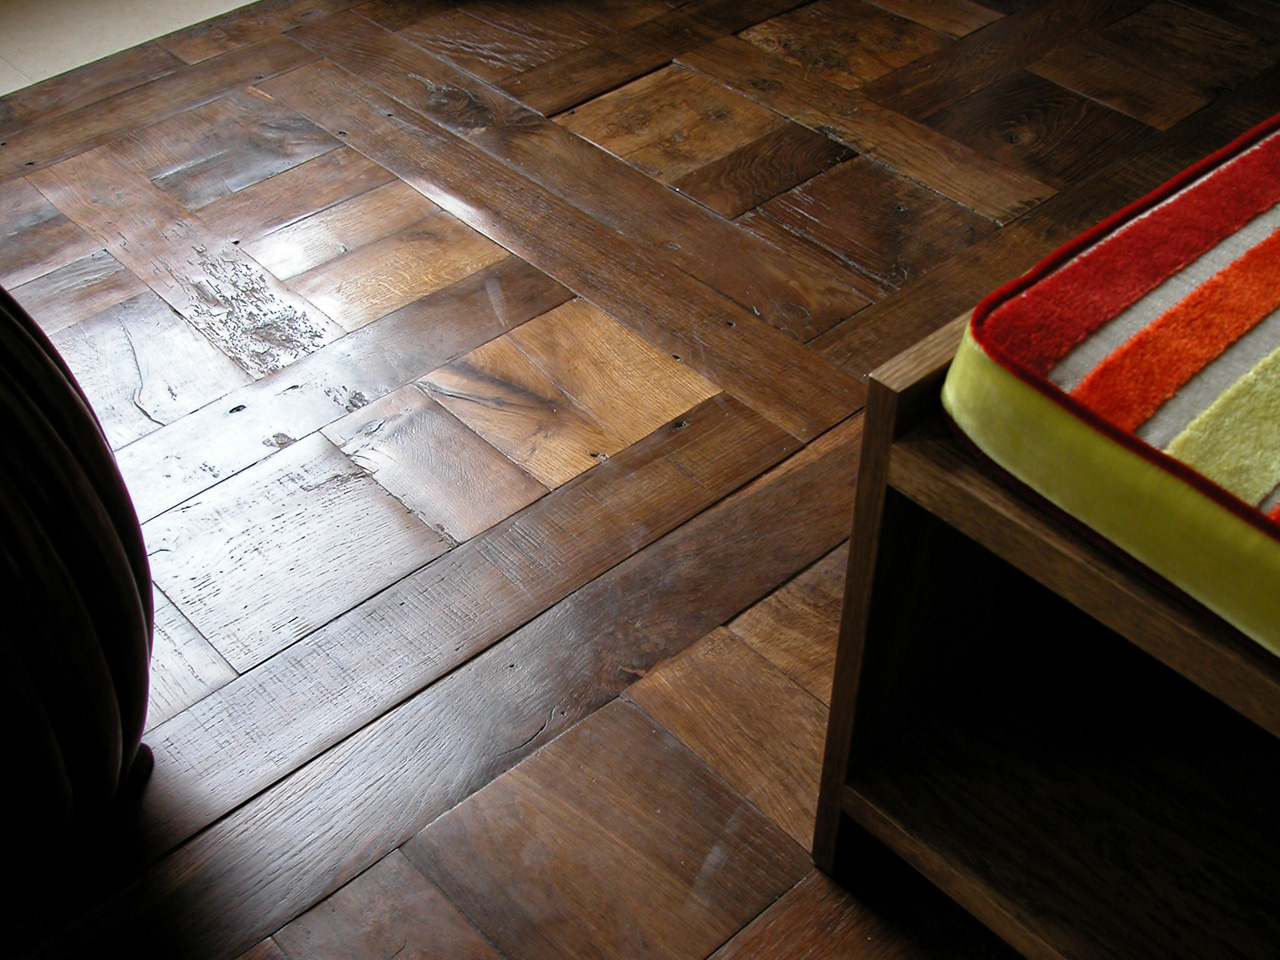 Wooden flooring, Original Face, Antique Oak Chantilly Panels detail